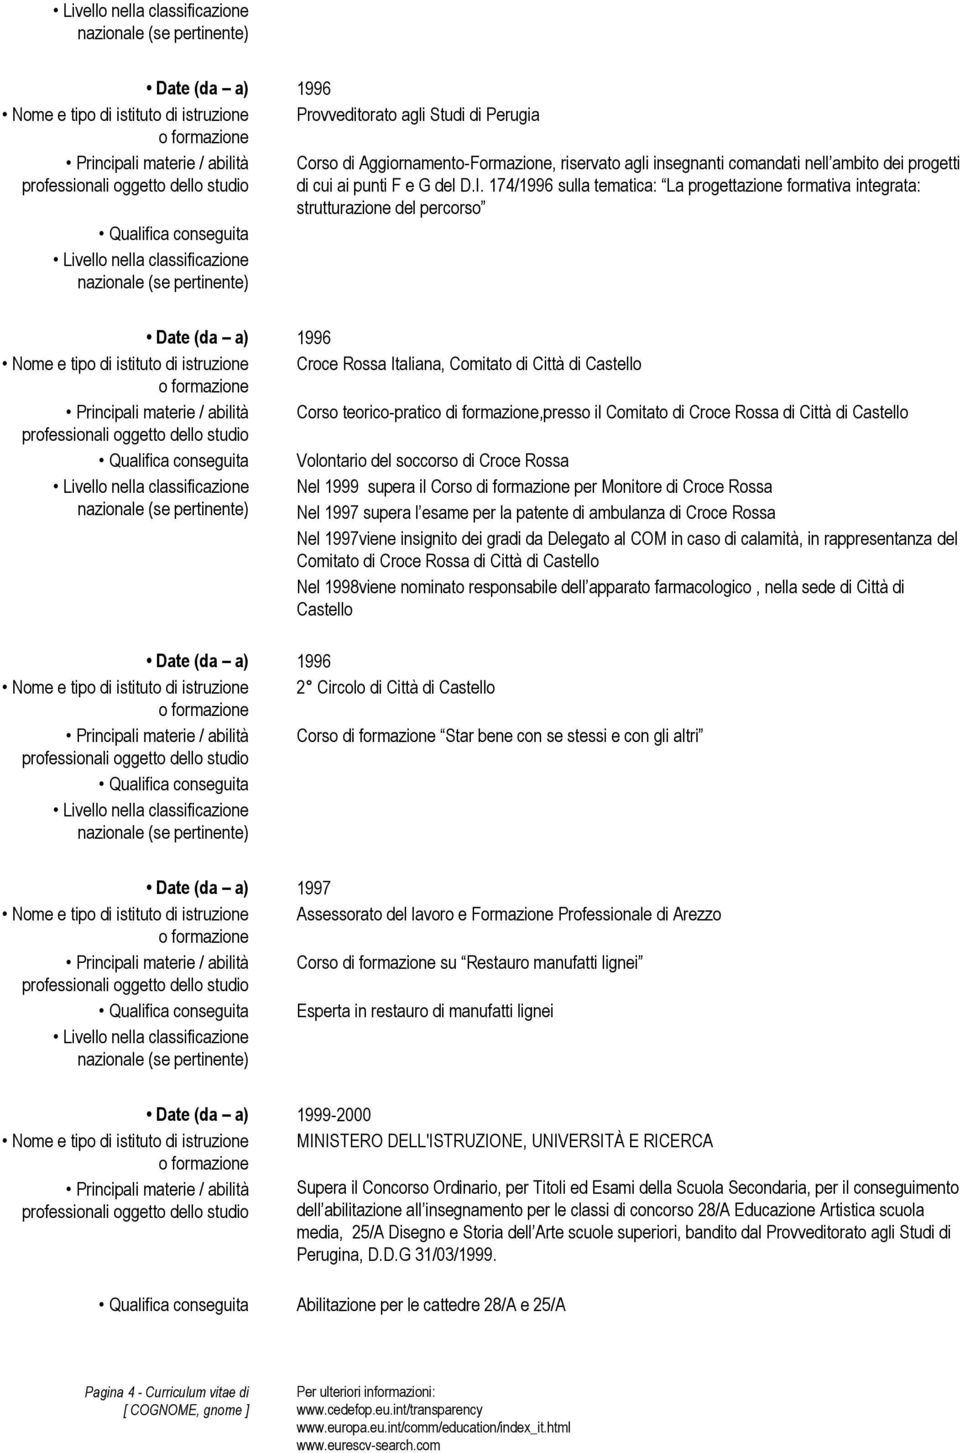 174/1996 sulla tematica: La progettazione formativa integrata: strutturazione del percorso Date (da a) 1996 Nome e tipo di istituto di istruzione Croce Rossa Italiana, Comitato di Città di Castello